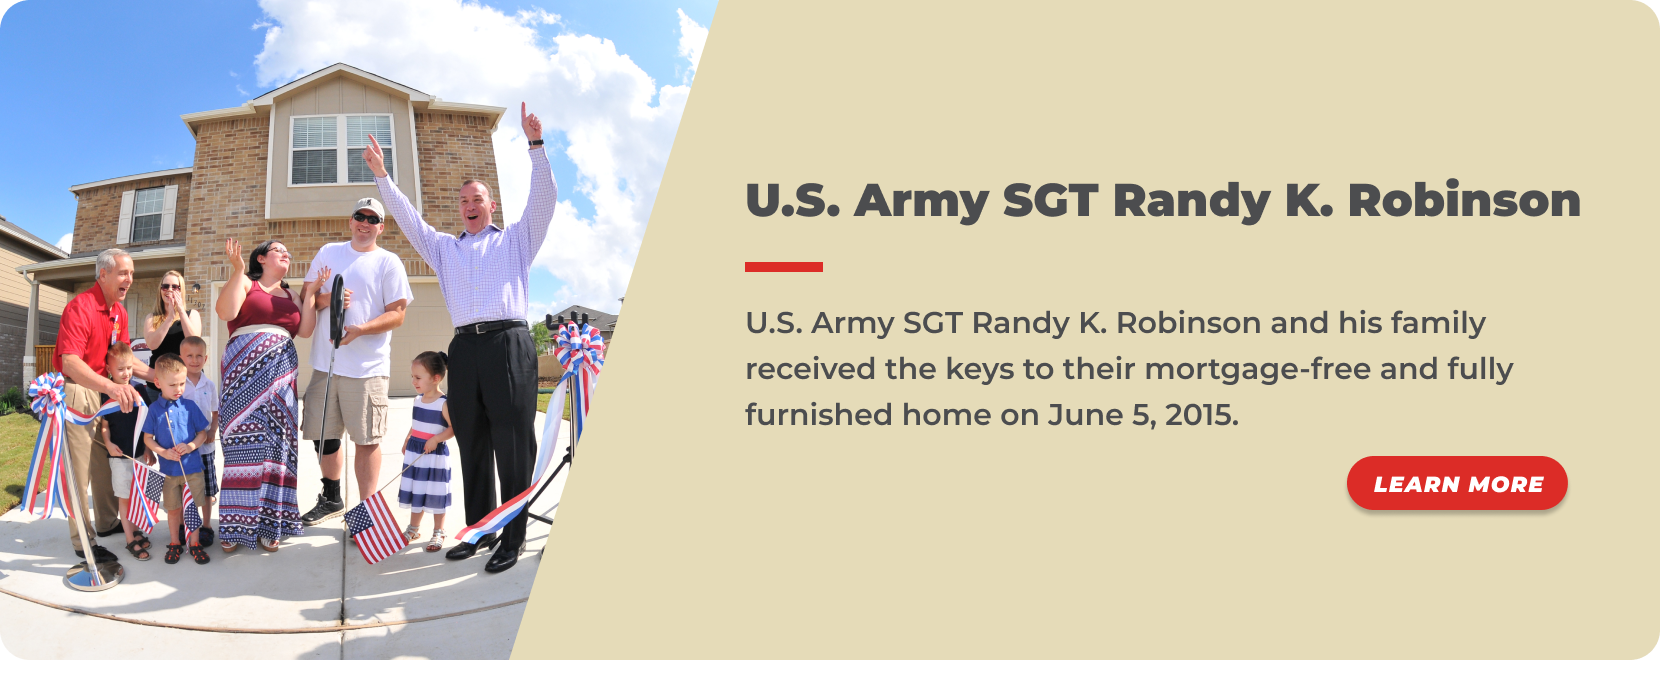 7 -U.S. Army SGT Randy K. Robinson